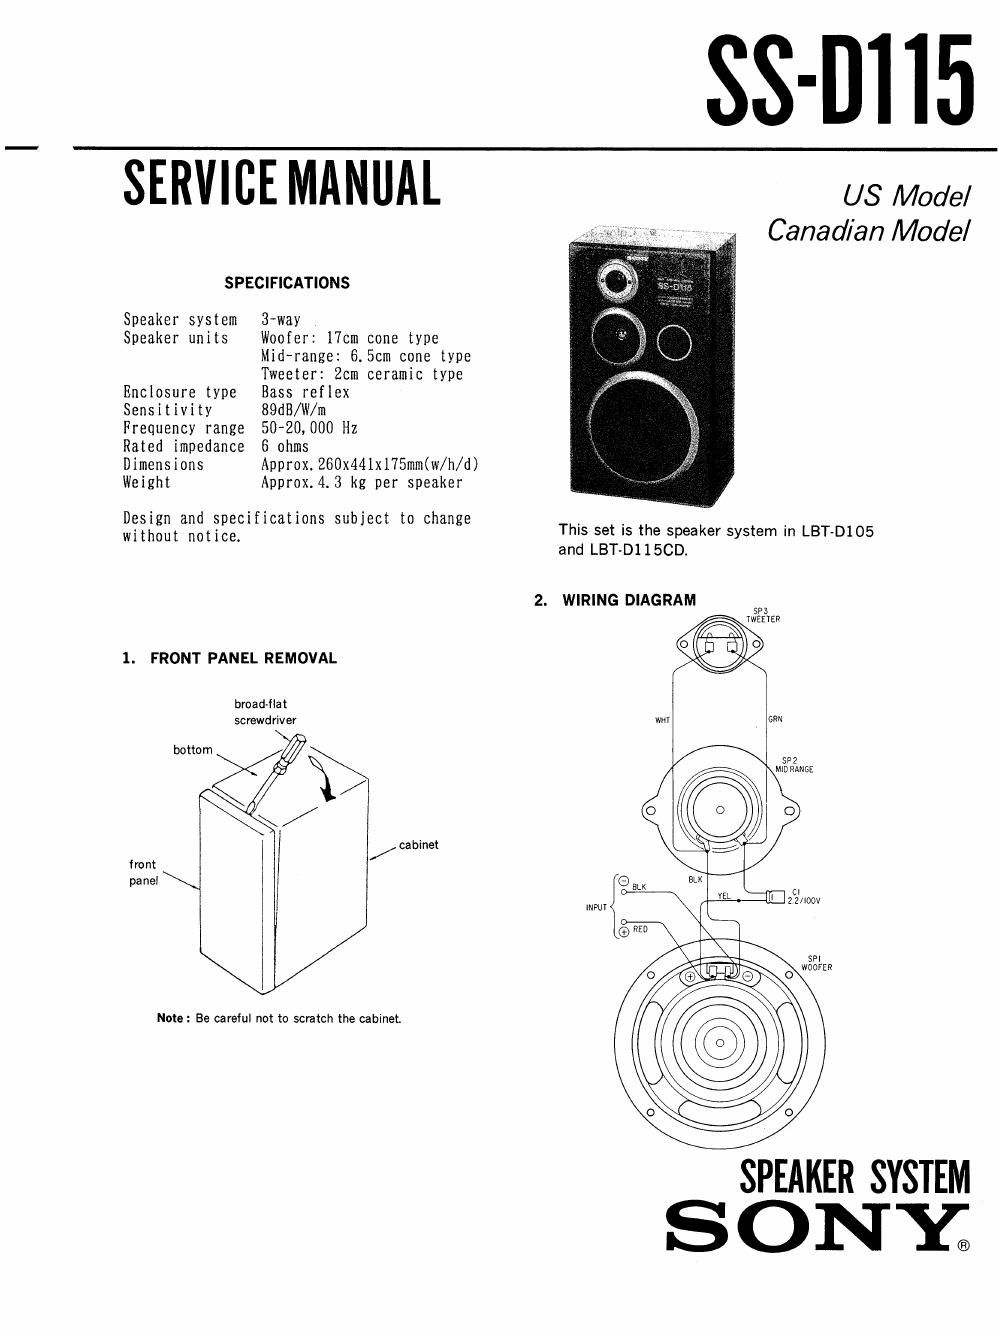 sony ss d 115 service manual